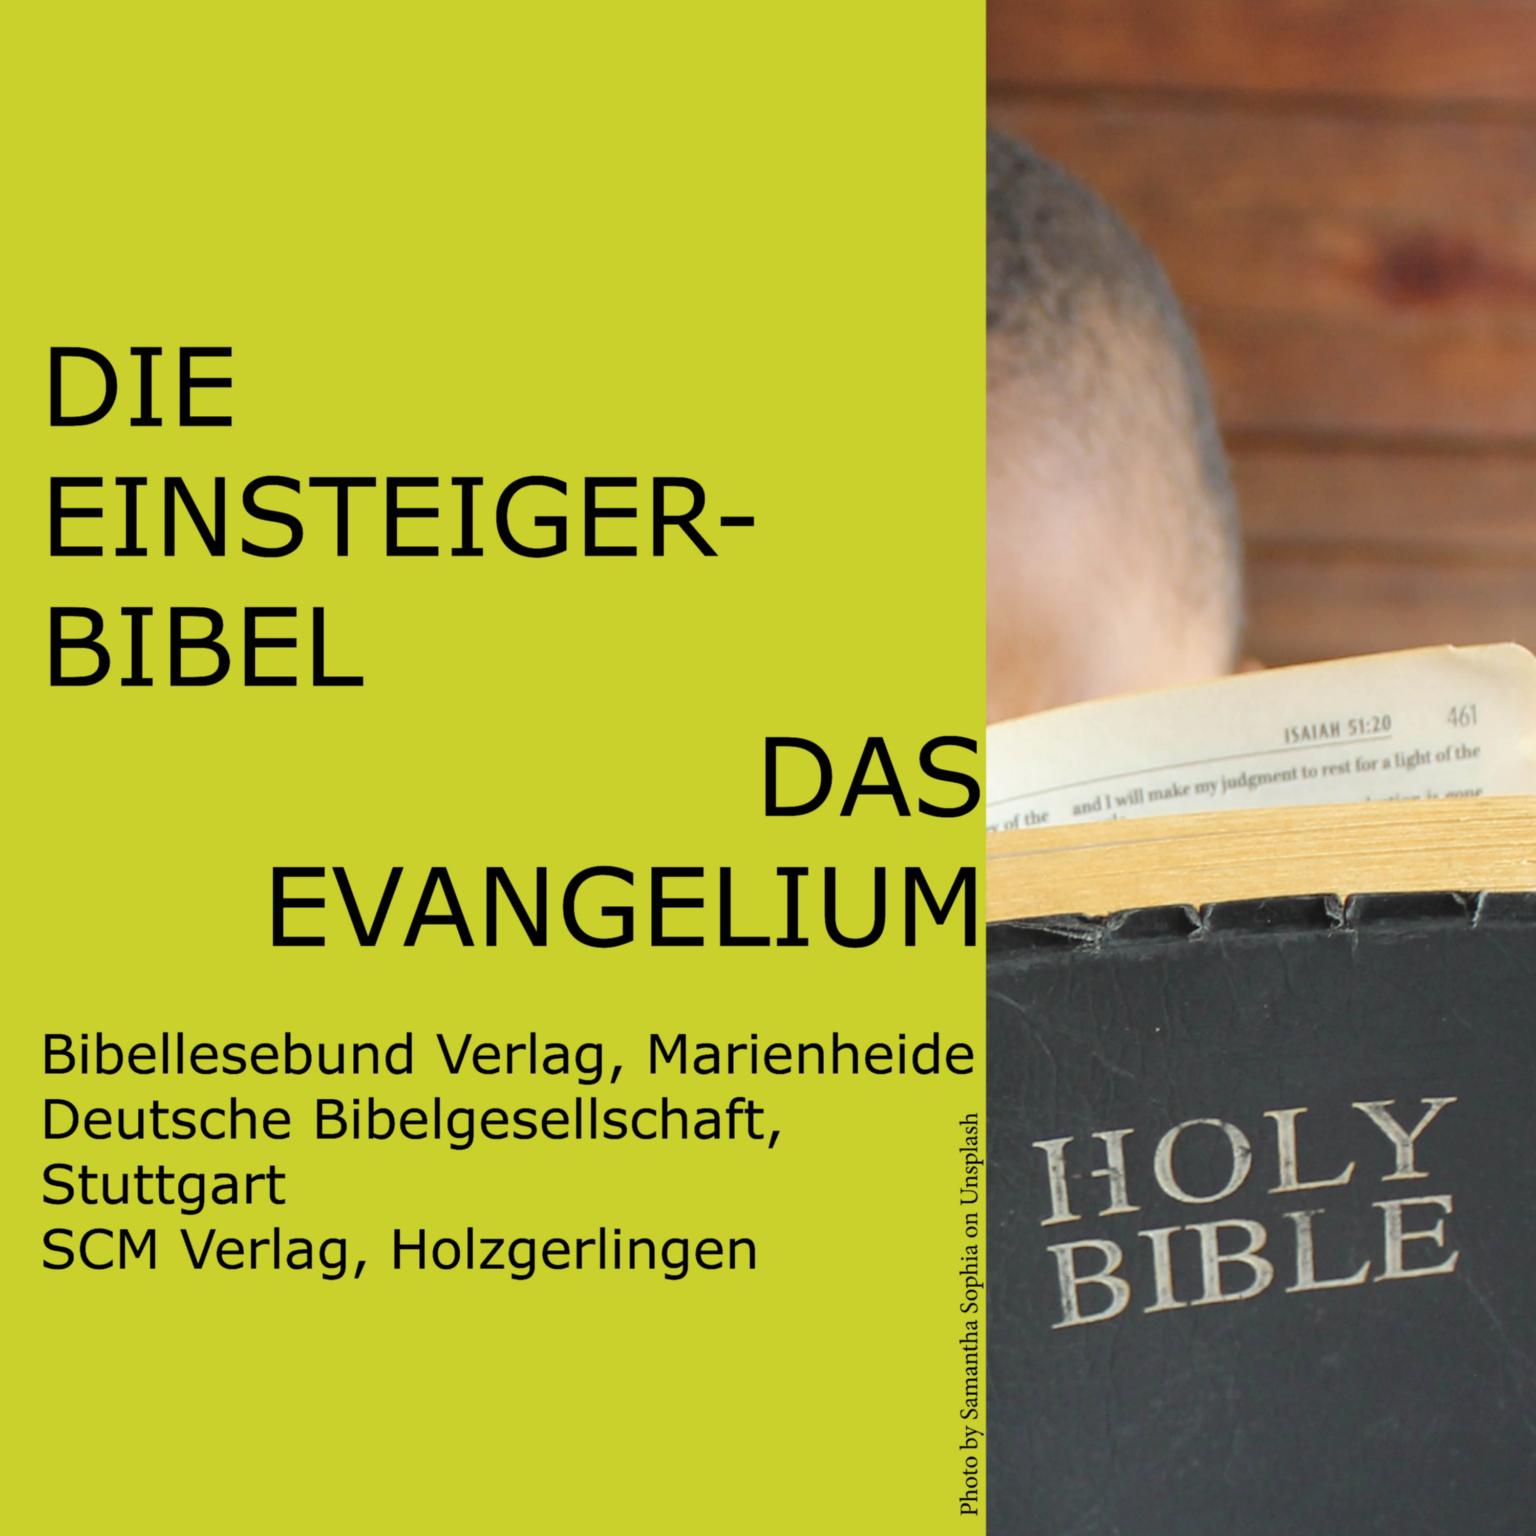 Einsteiger-Bibel (c) St Hildegard